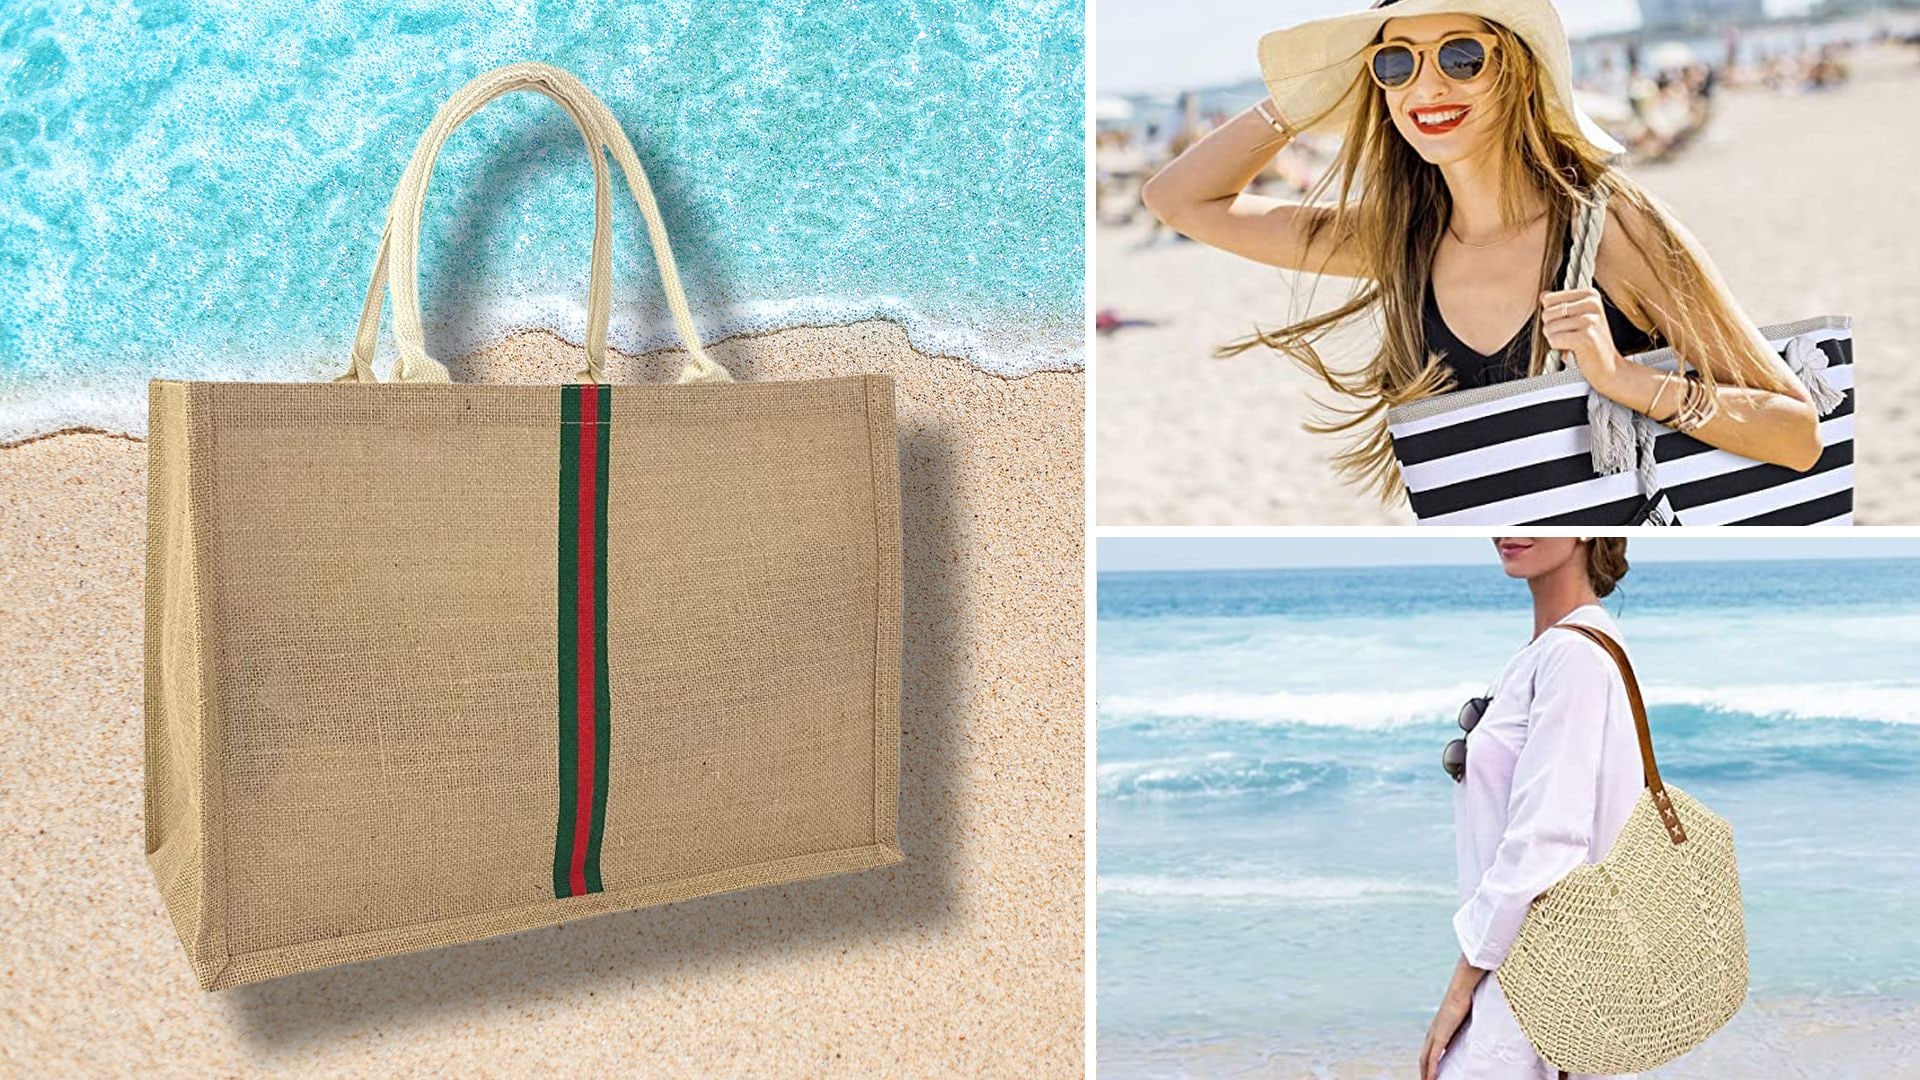 Chanel Large Waterproof Beach Tote Bag